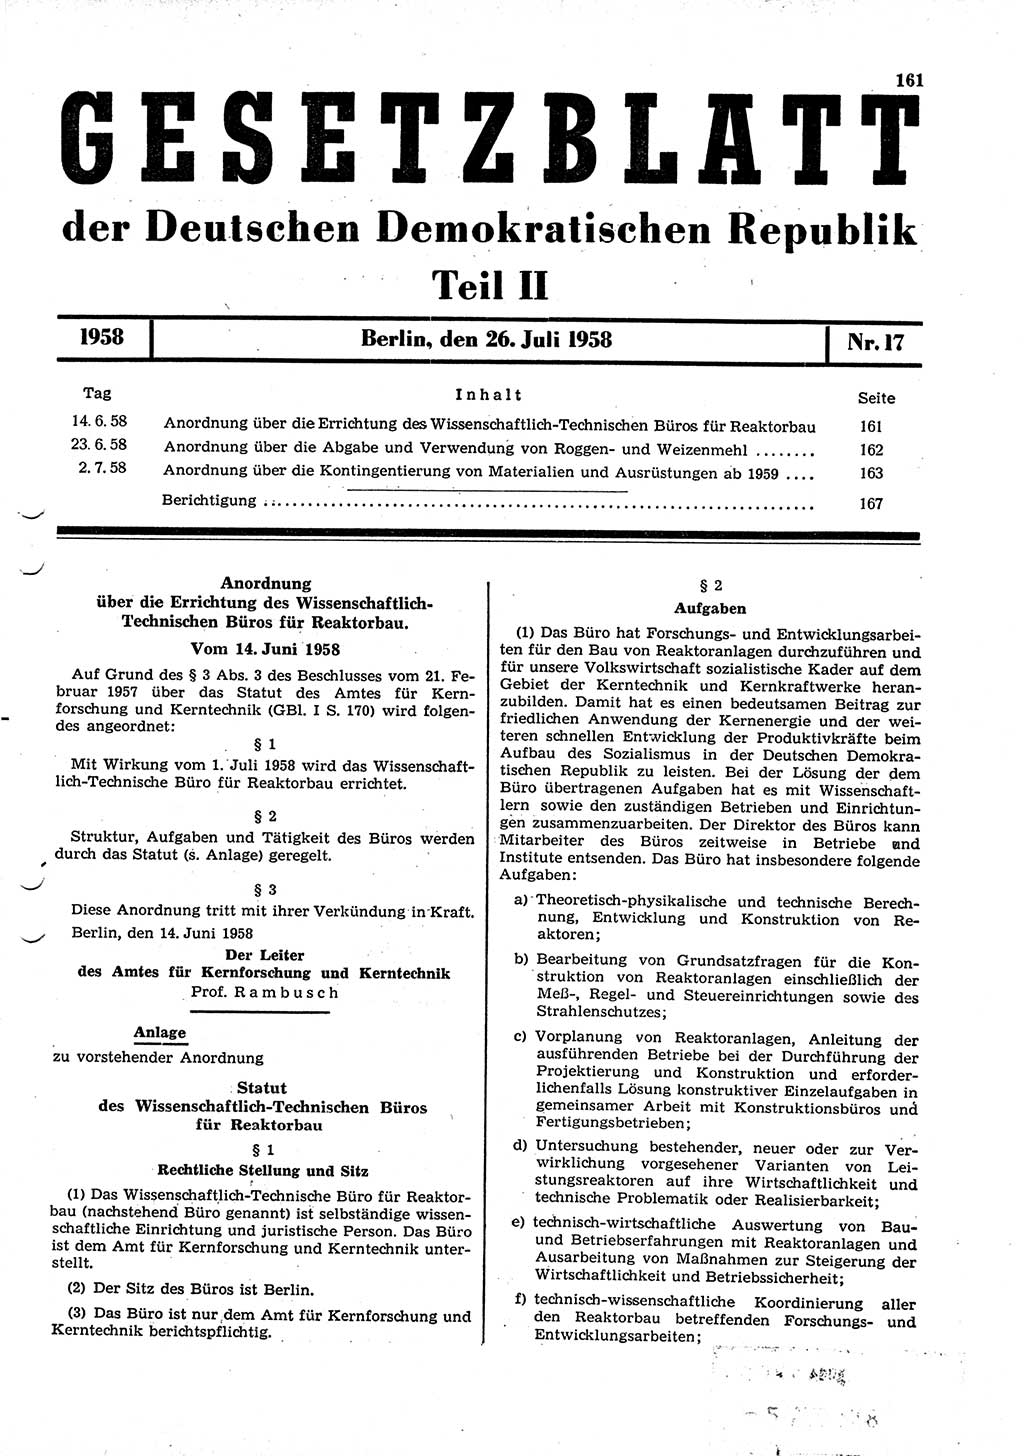 Gesetzblatt (GBl.) der Deutschen Demokratischen Republik (DDR) Teil ⅠⅠ 1958, Seite 161 (GBl. DDR ⅠⅠ 1958, S. 161)